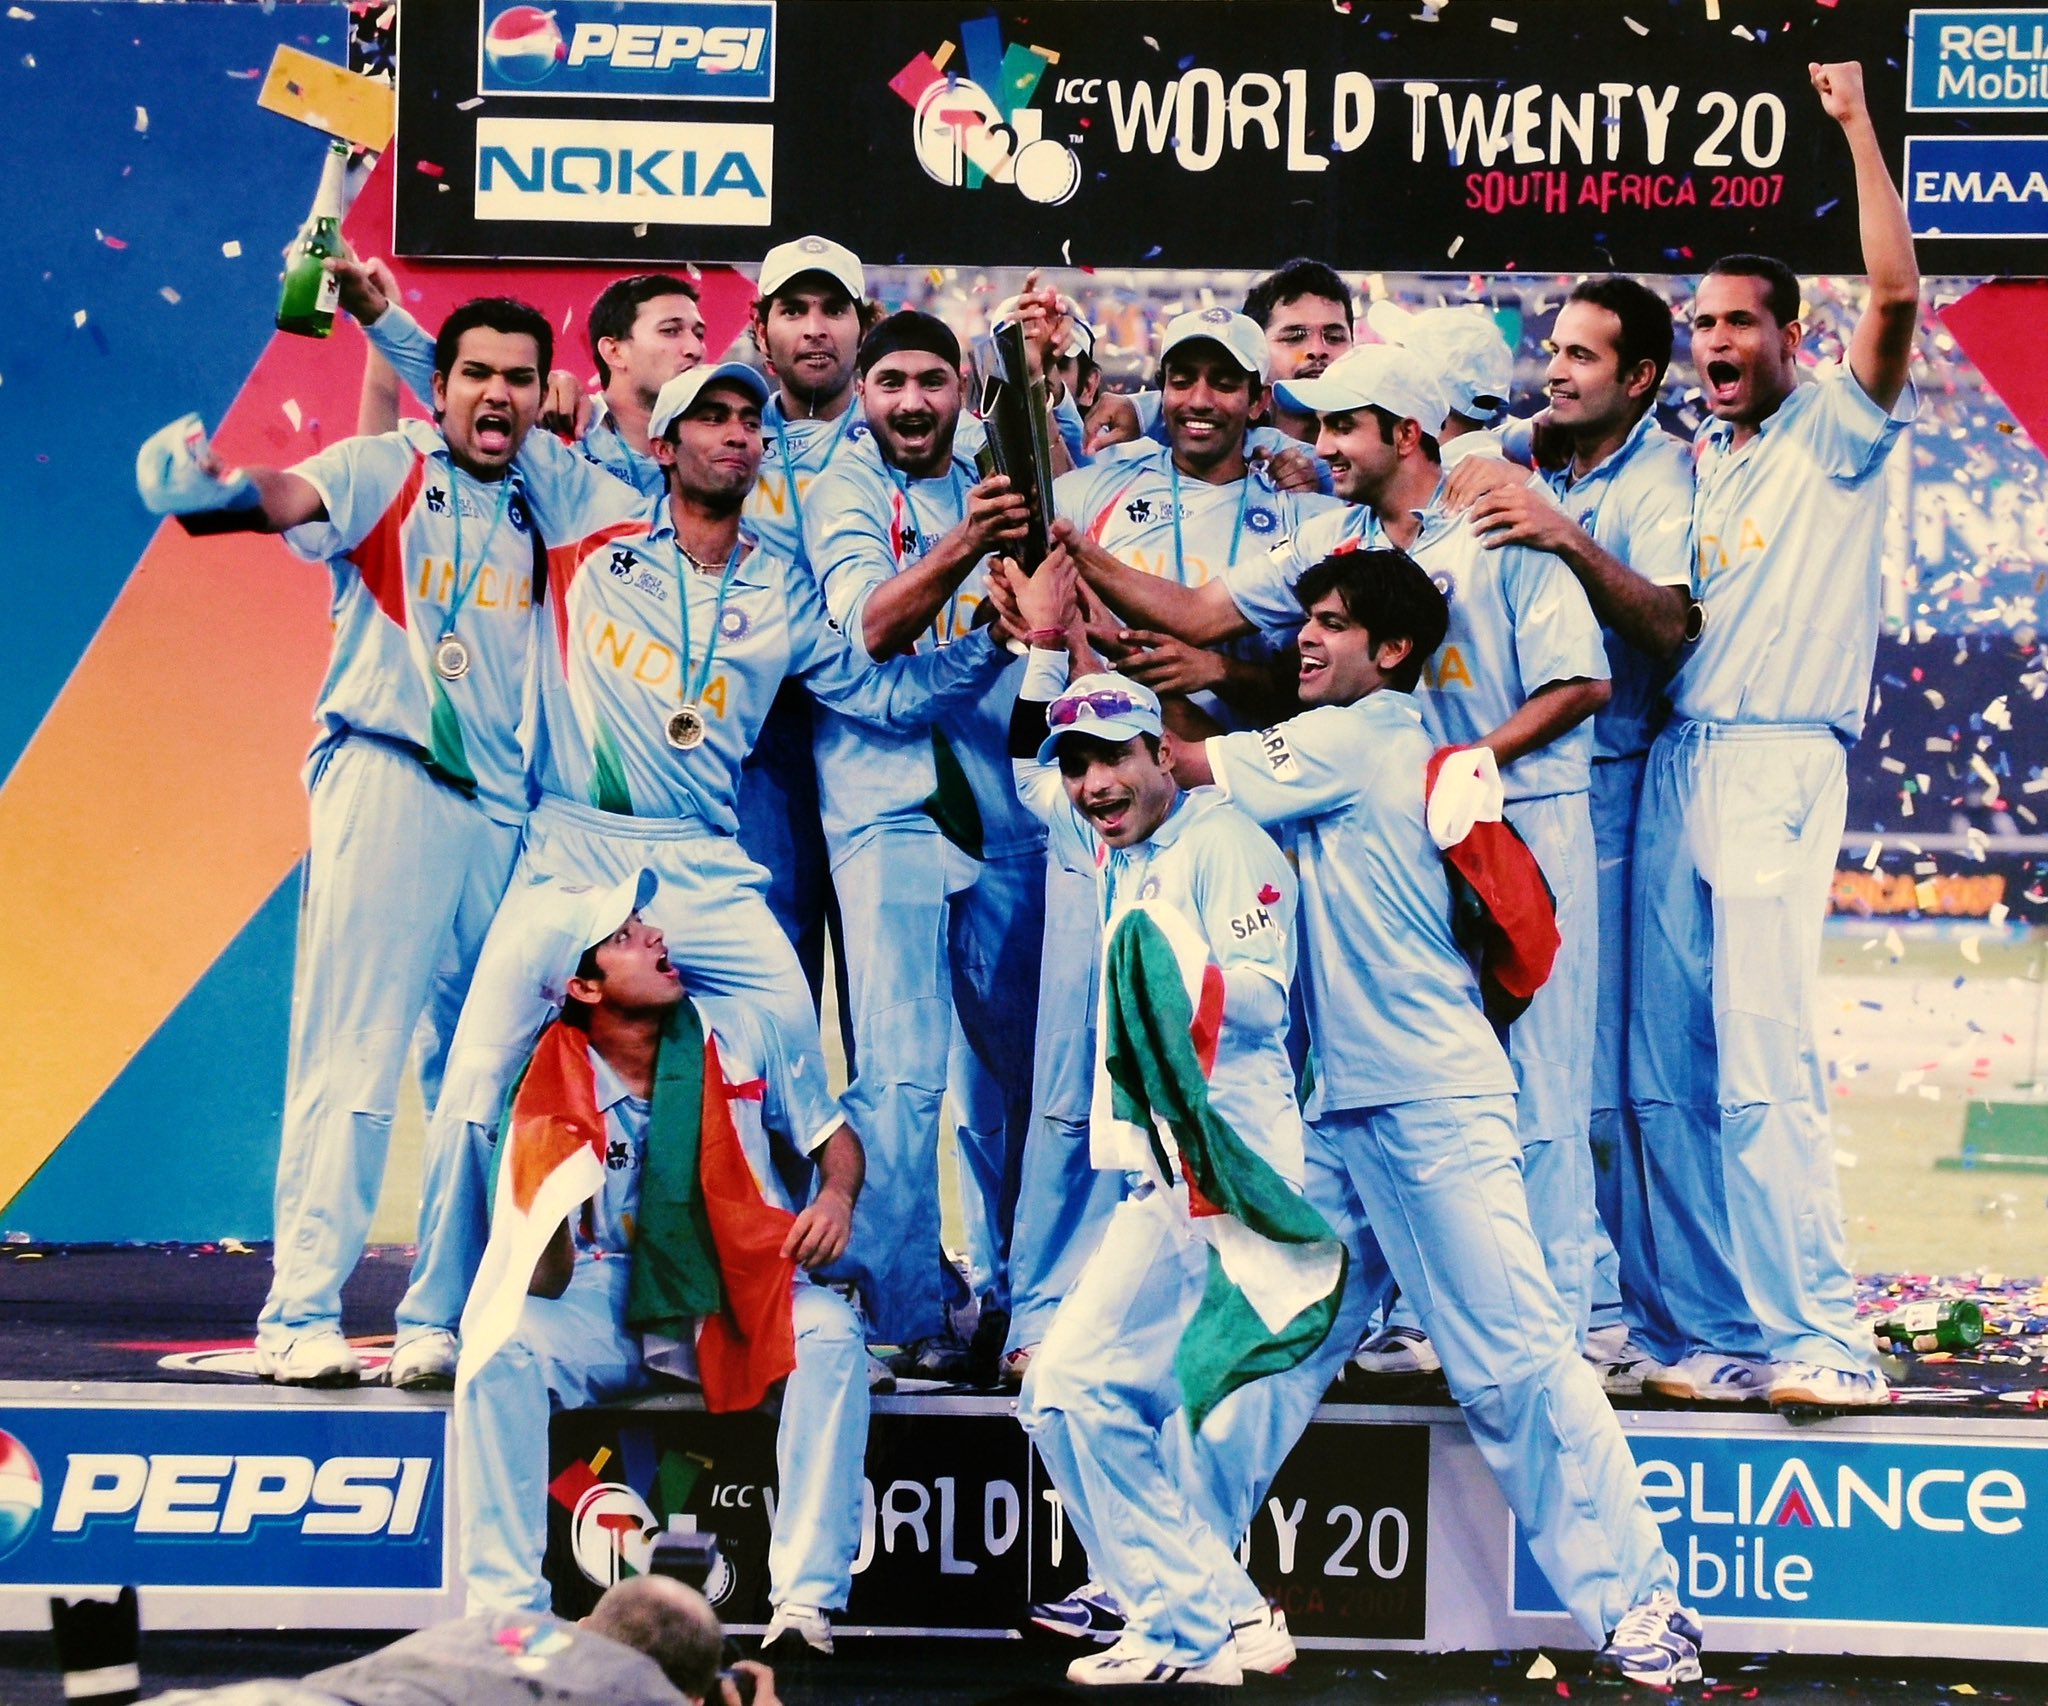 ક્રિકેટ ચાહકો માટે સારા સમાચાર! ફિલ્મ ’83’ બાદ હવે 2007ના T20 વર્લ્ડ કપ પર વેબસિરીઝ બનશે